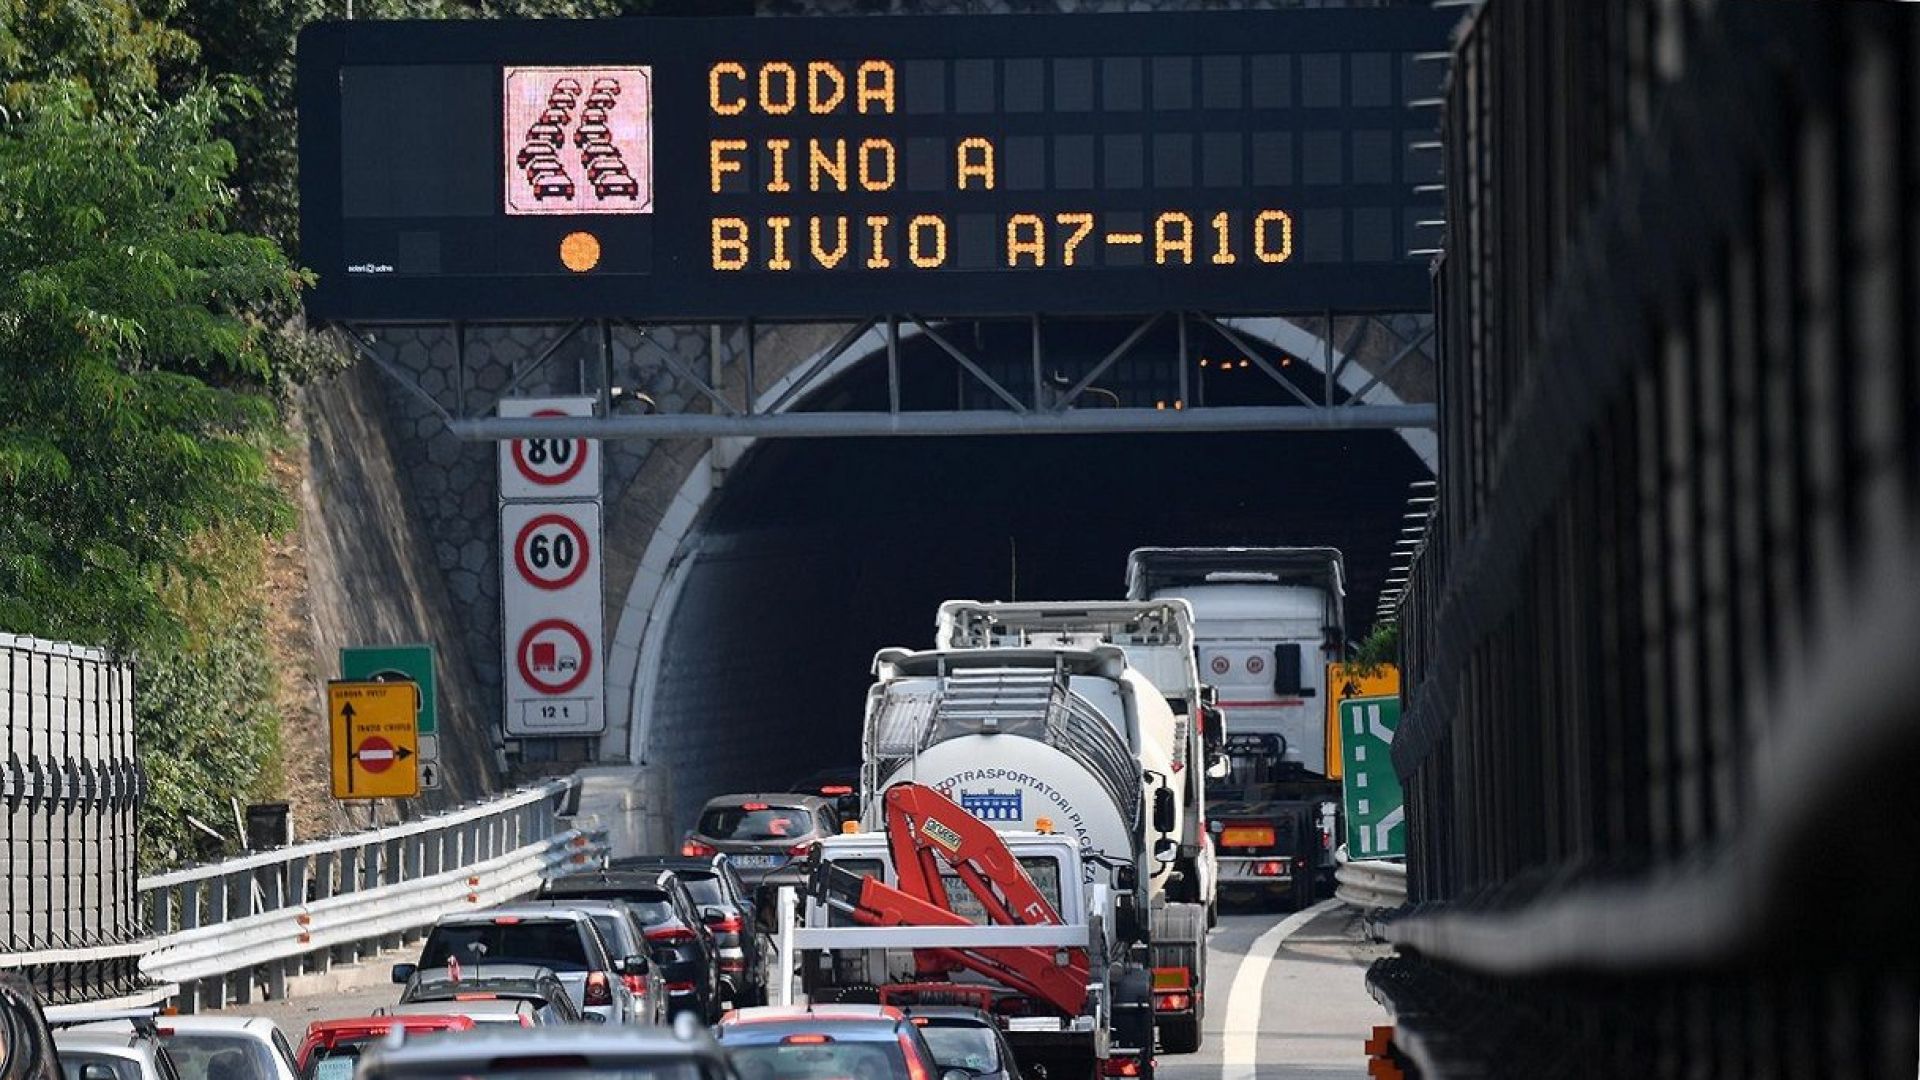 Autotrasportatori all'attacco: "Autostrade nel caos, servono ristori per extracosti"